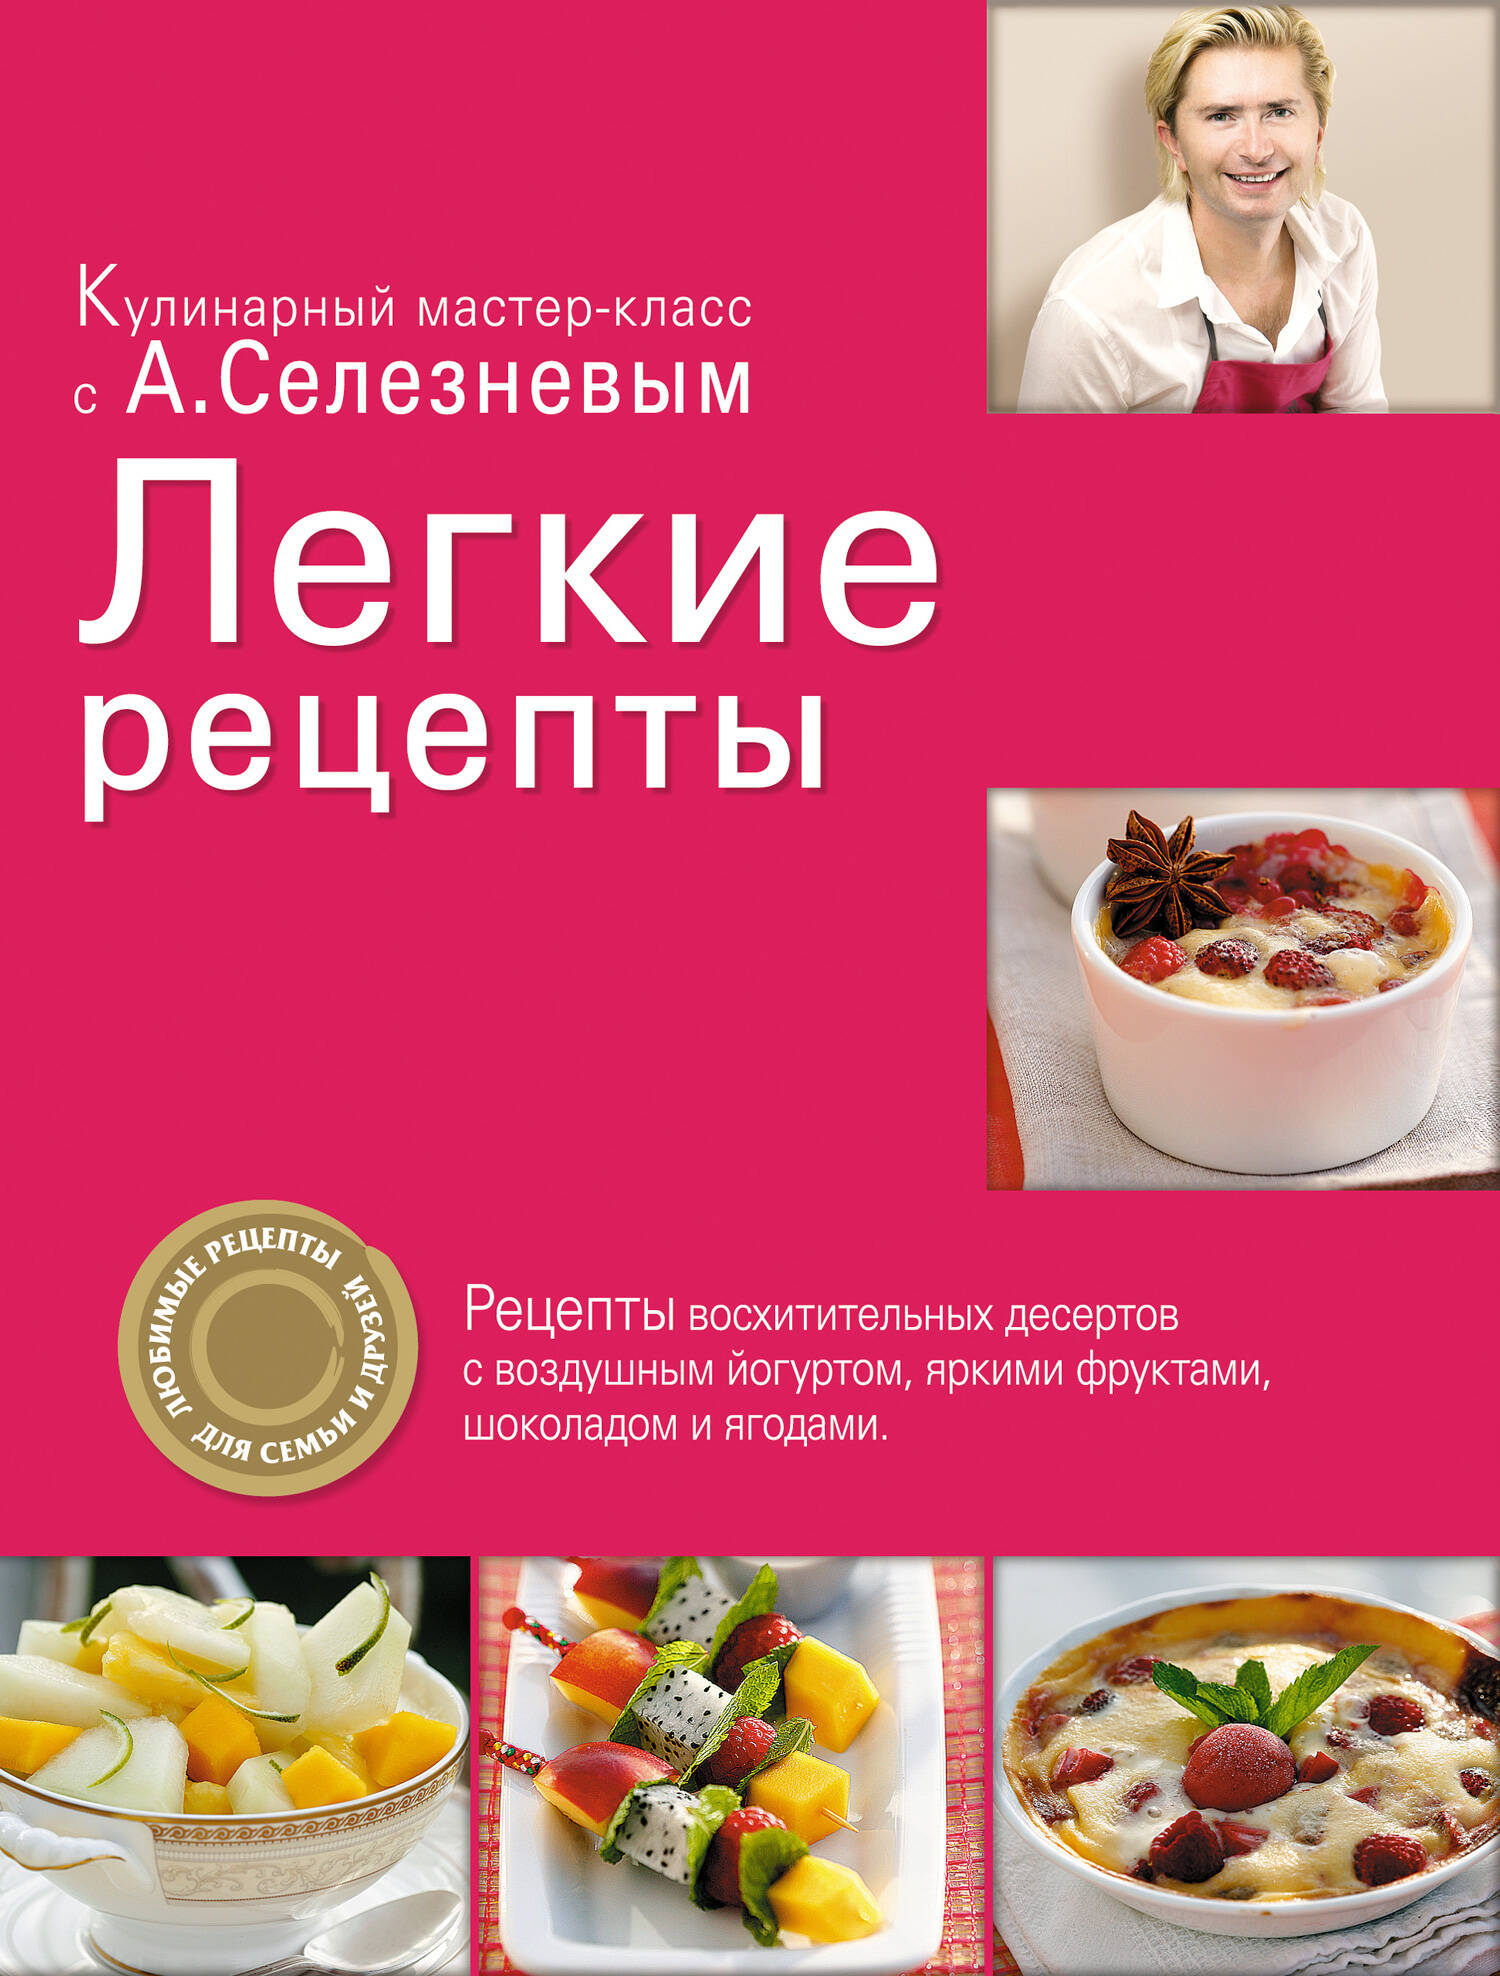 Кондитер Александр Селезнев: «Для Нового года – овощные торты!» | Аргументы и Факты